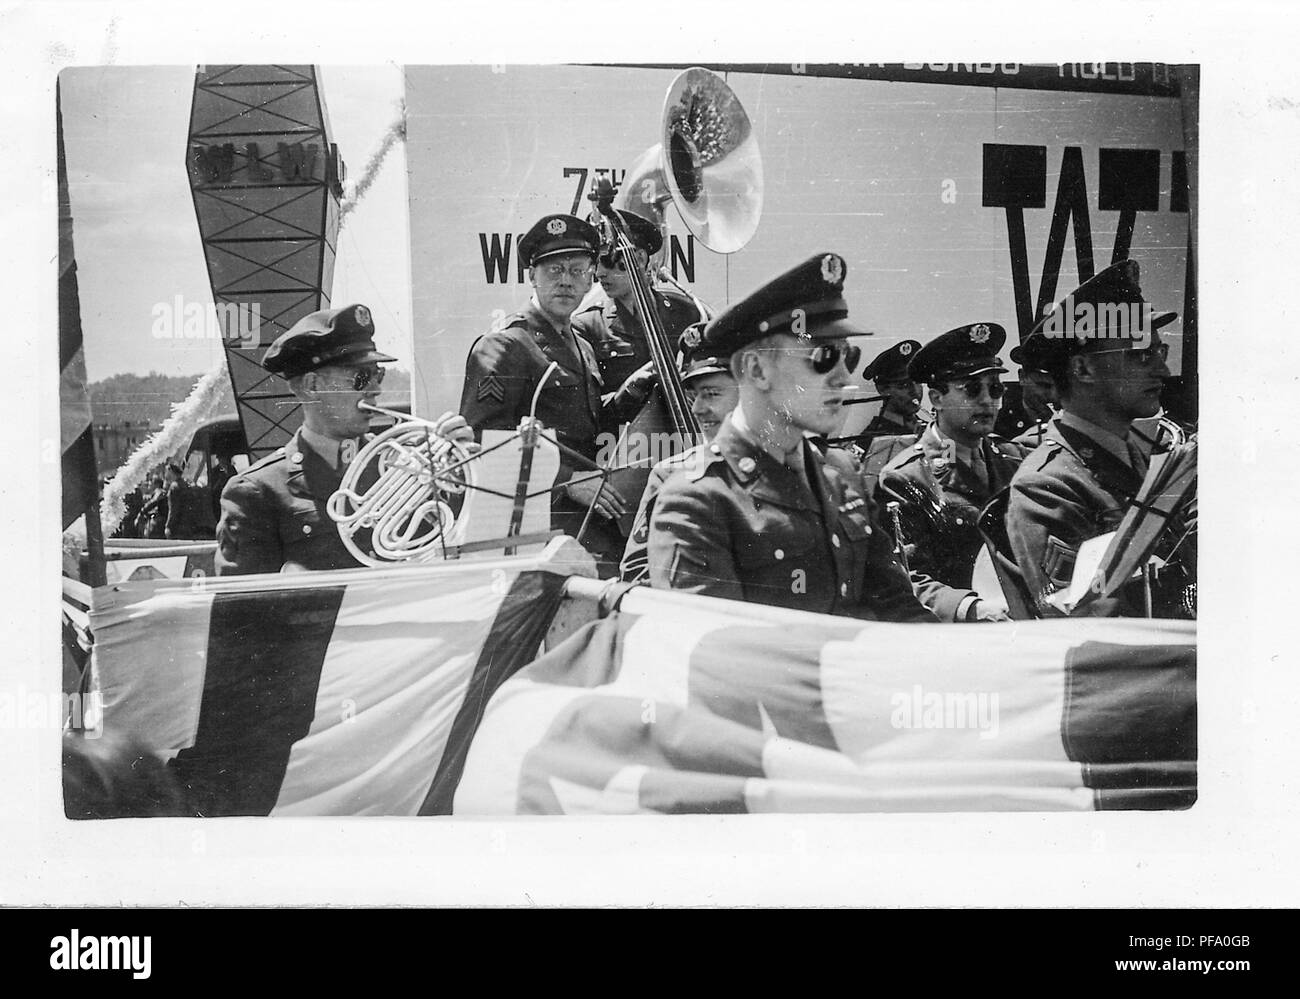 Schwarz-weiß Foto mit einer Brass Band, das Tragen der militärischen Kleidung (mit Flügeln an ihren Kappen vorschlagen Air Force Zugehörigkeit) und spielen Instrumente außerhalb, wahrscheinlich in Ohio fotografiert, als Teil des Siebten Krieg Darlehen, nahe dem Ende des Zweiten Weltkrieges, 1945. () Stockfoto